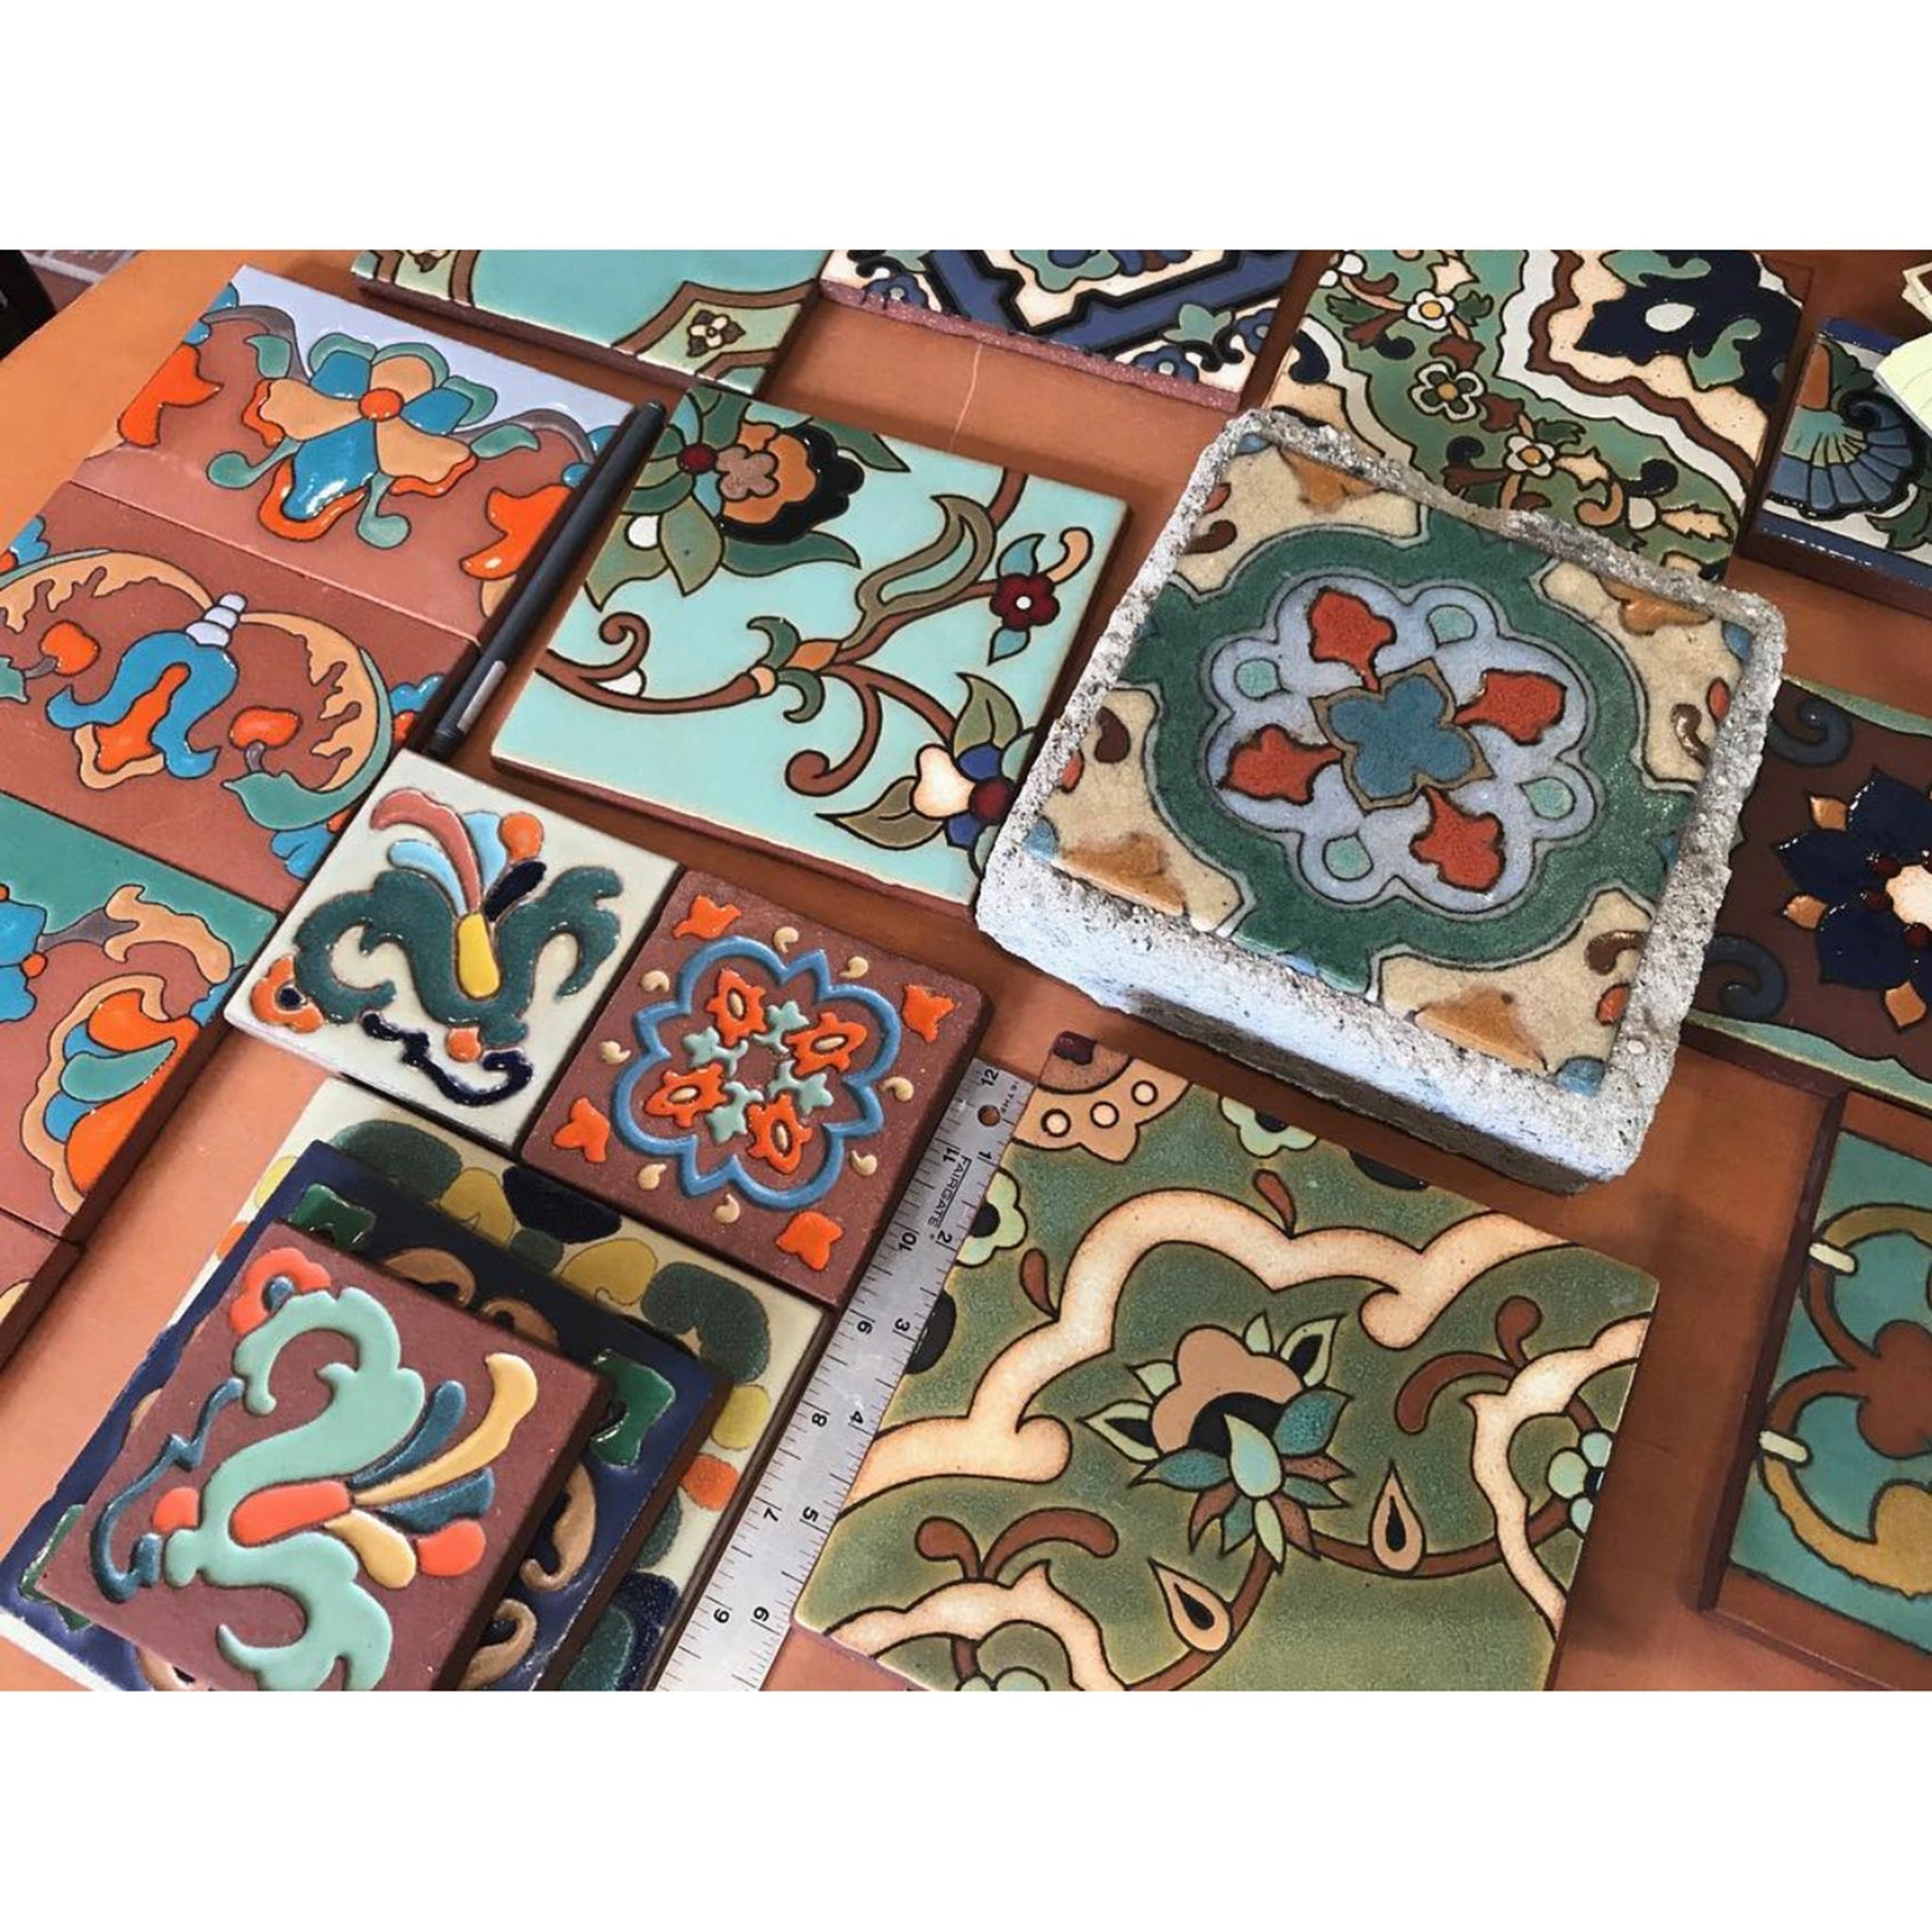 Linea Tile Porcelain Coasters Set of 4 + Reviews